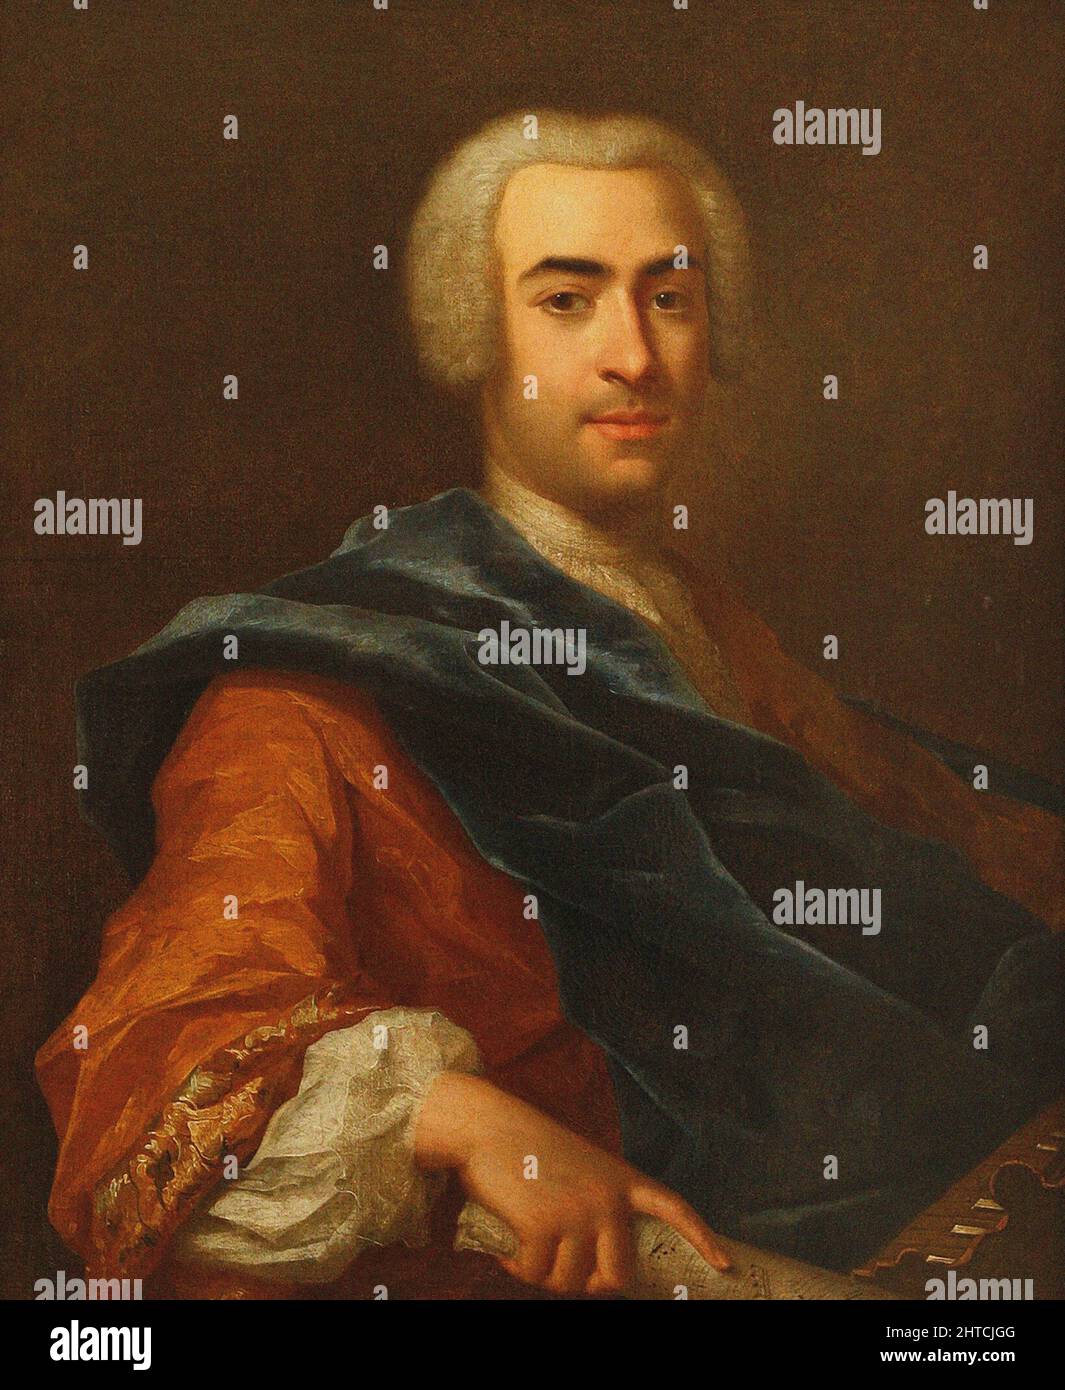 Ritratto del direttore e compositore Francesco Araja (1709-1770), metà dei 18th cen. Trovato nella collezione del M. Glinka state Central Museum of Music, Mosca. Foto Stock